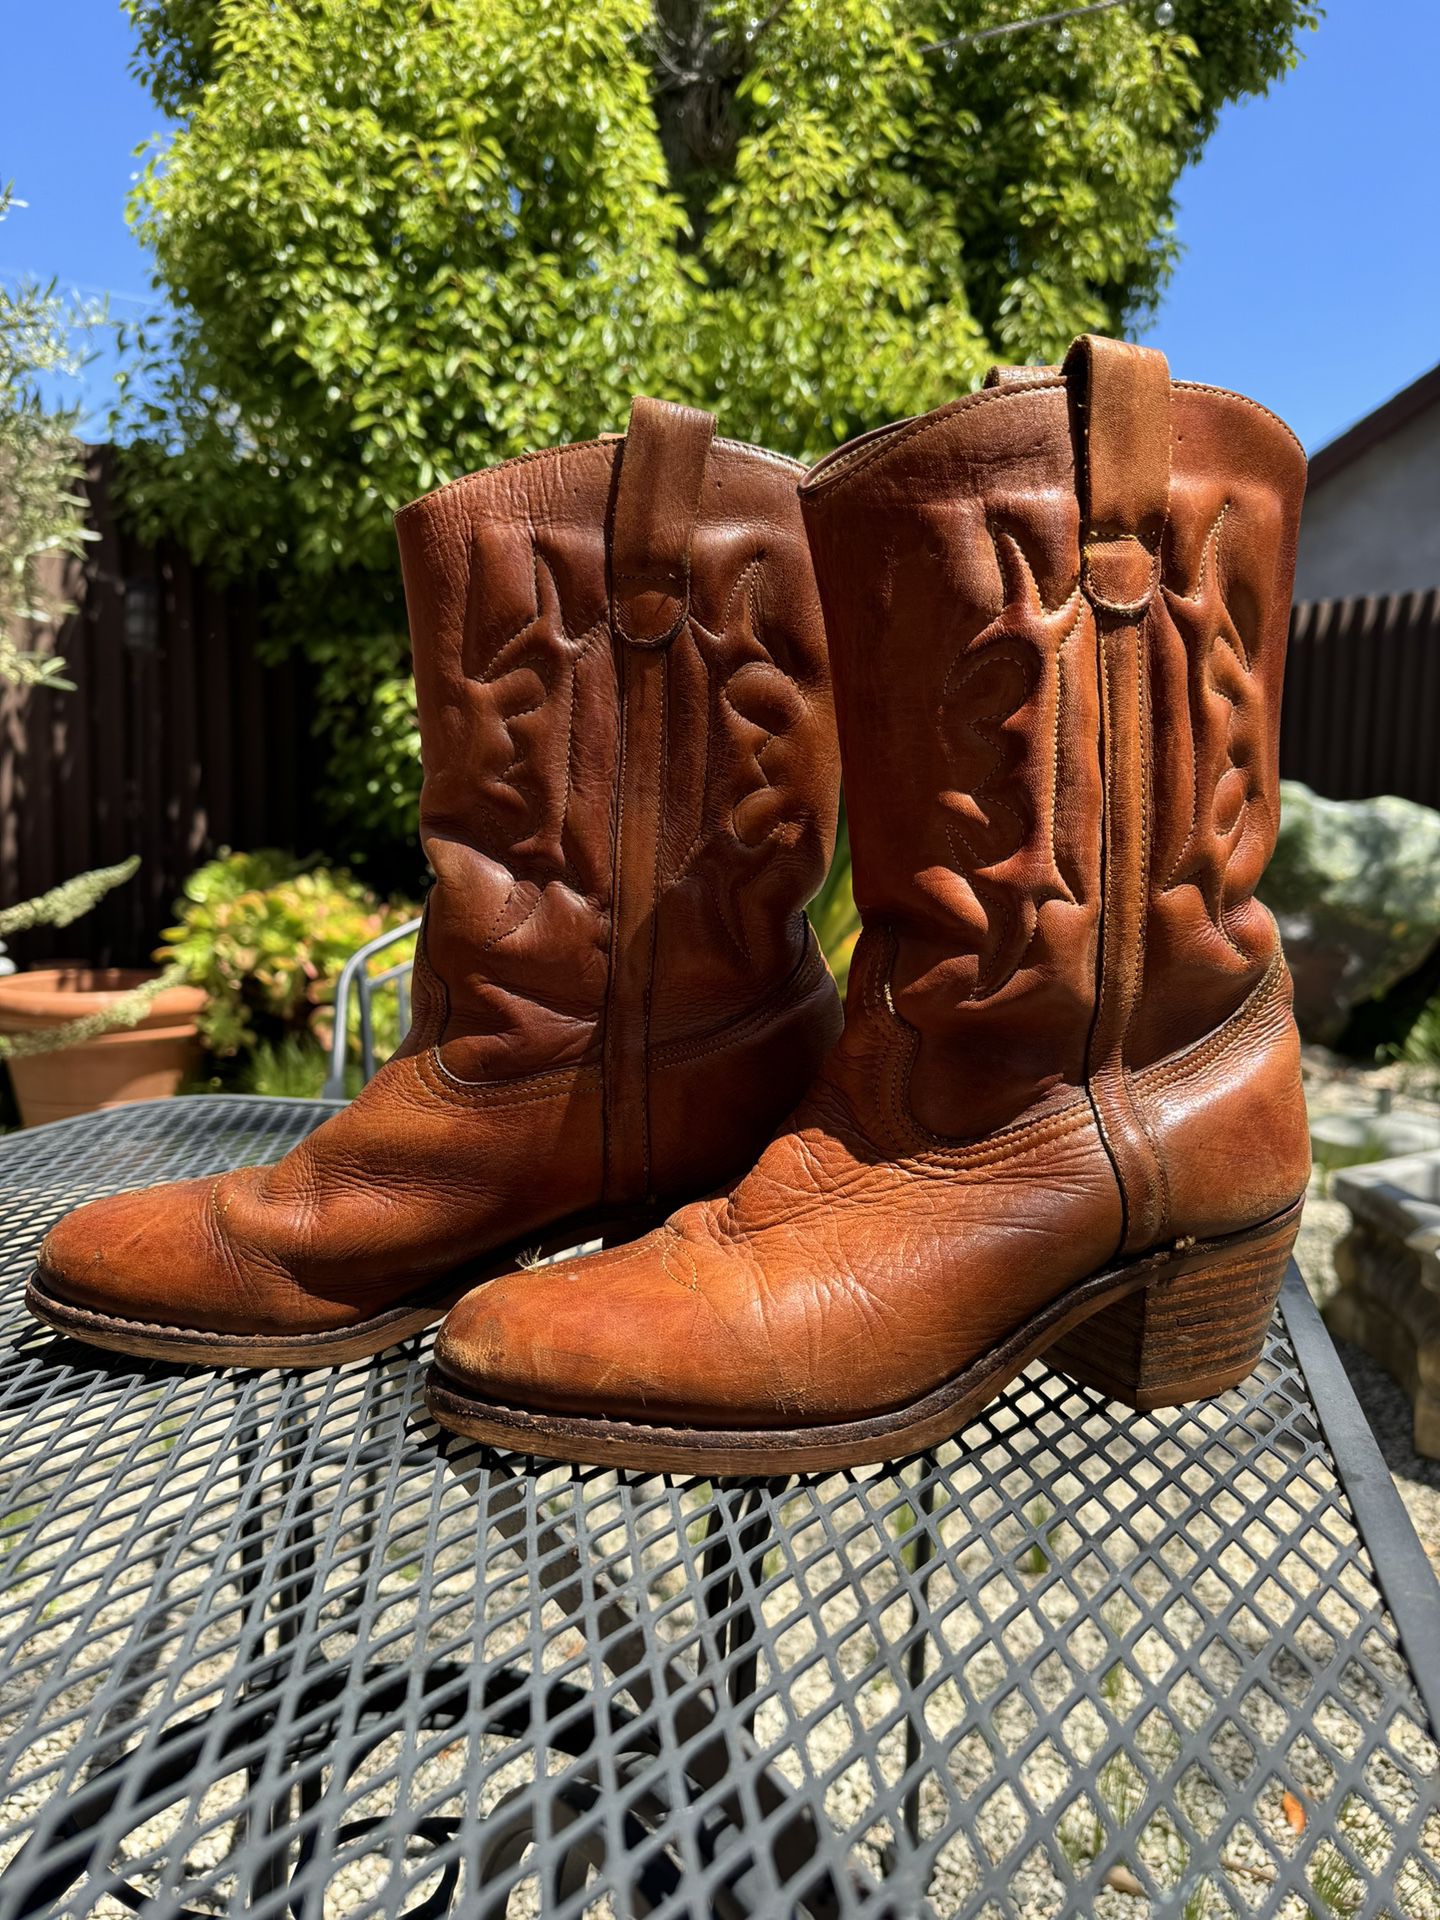 Brazilian Leather Cowboy Boots 9.5D